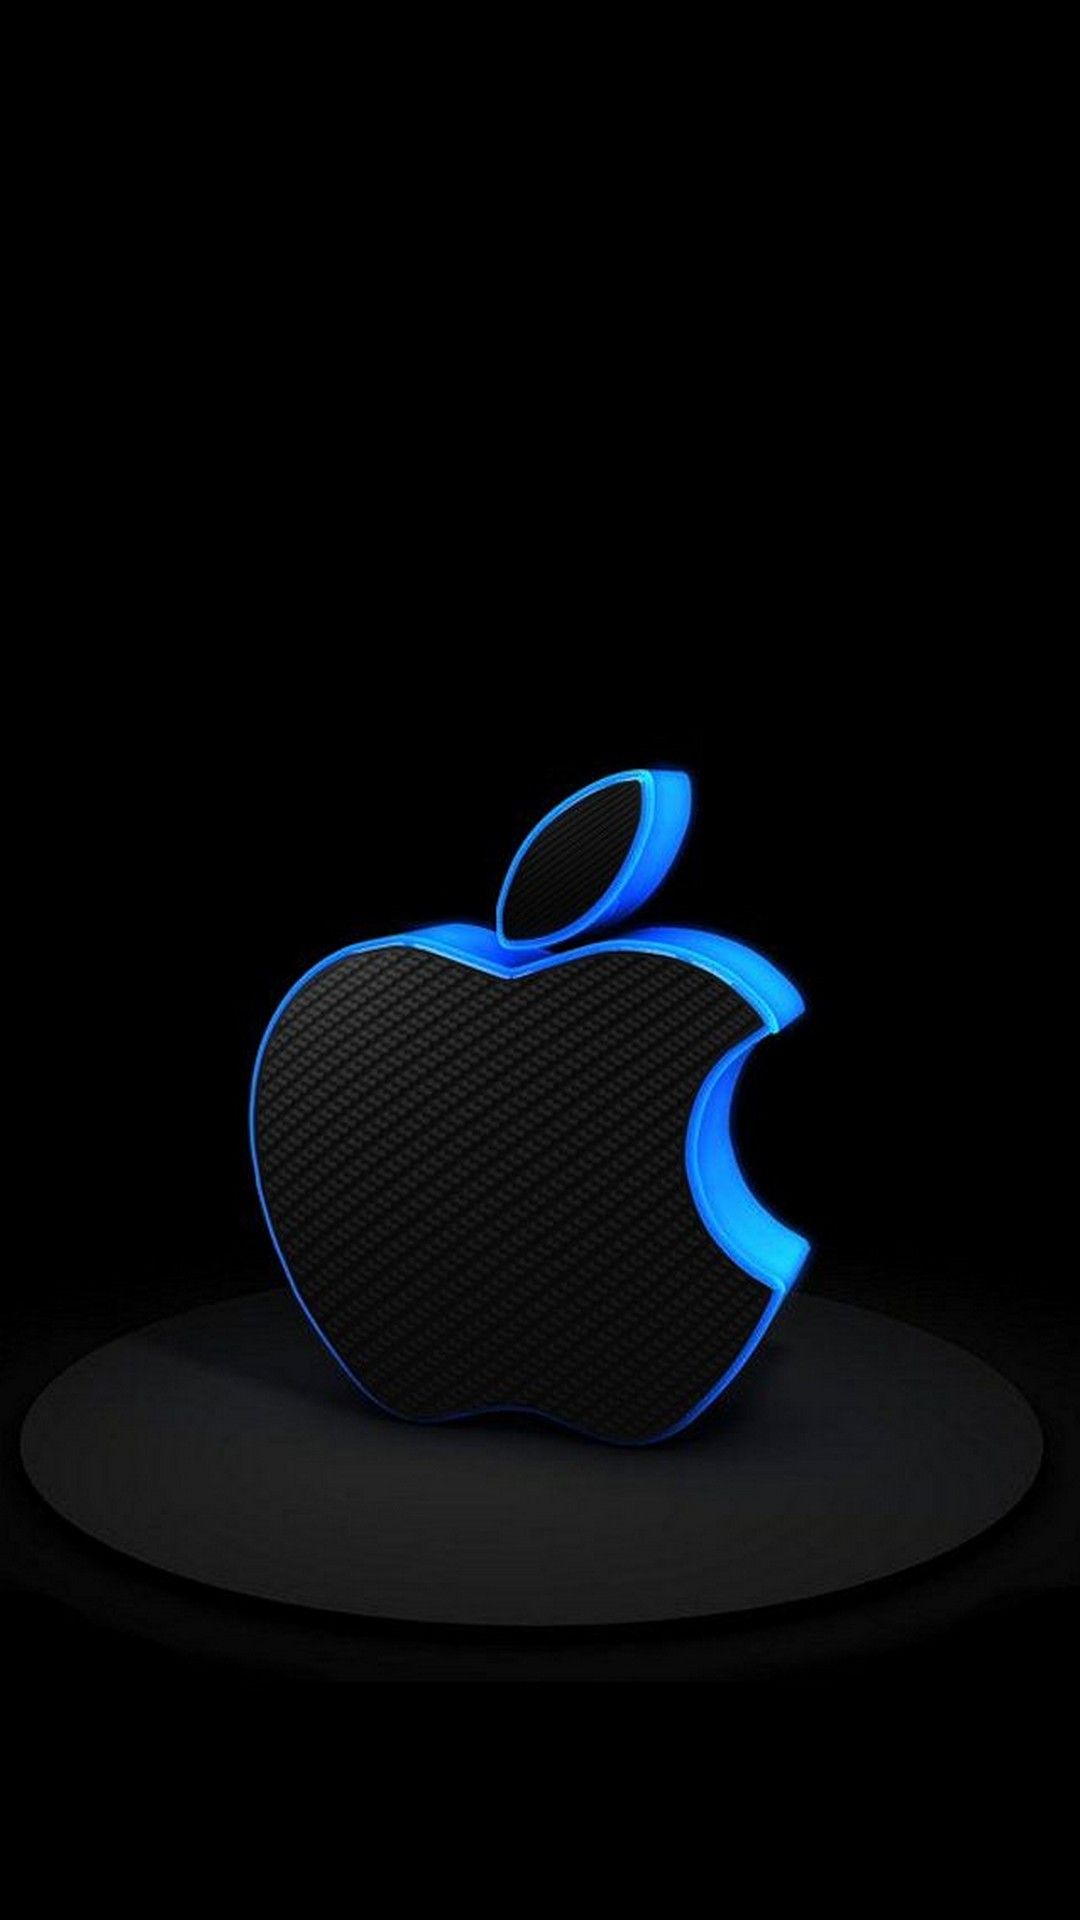 3D iPhone Logo Wallpaper Blue 1 Pinterest Apple logo 1080x1920